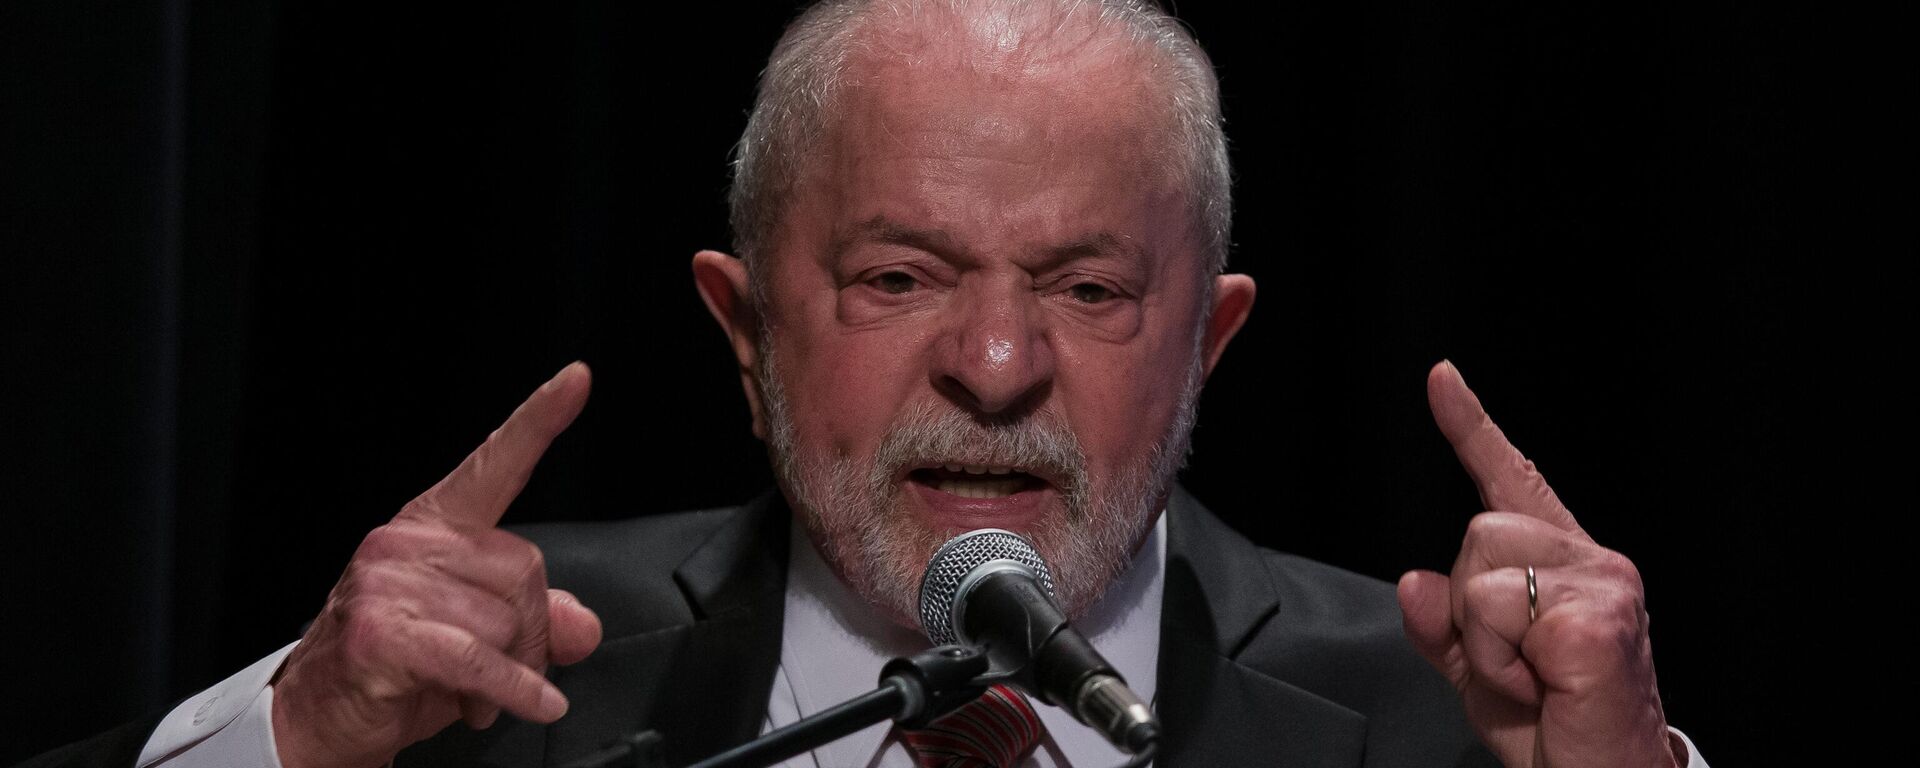 O presidente Luiz Inácio Lula da Silva (PT) durante cerimônia de posse de Aloizio Mercadante na presidência do Banco Nacional de Desenvolvimento Econômico e Social (BNDES), no Rio de Janeiro (RJ), em 6 de fevereiro de 2023 - Sputnik Brasil, 1920, 06.02.2023